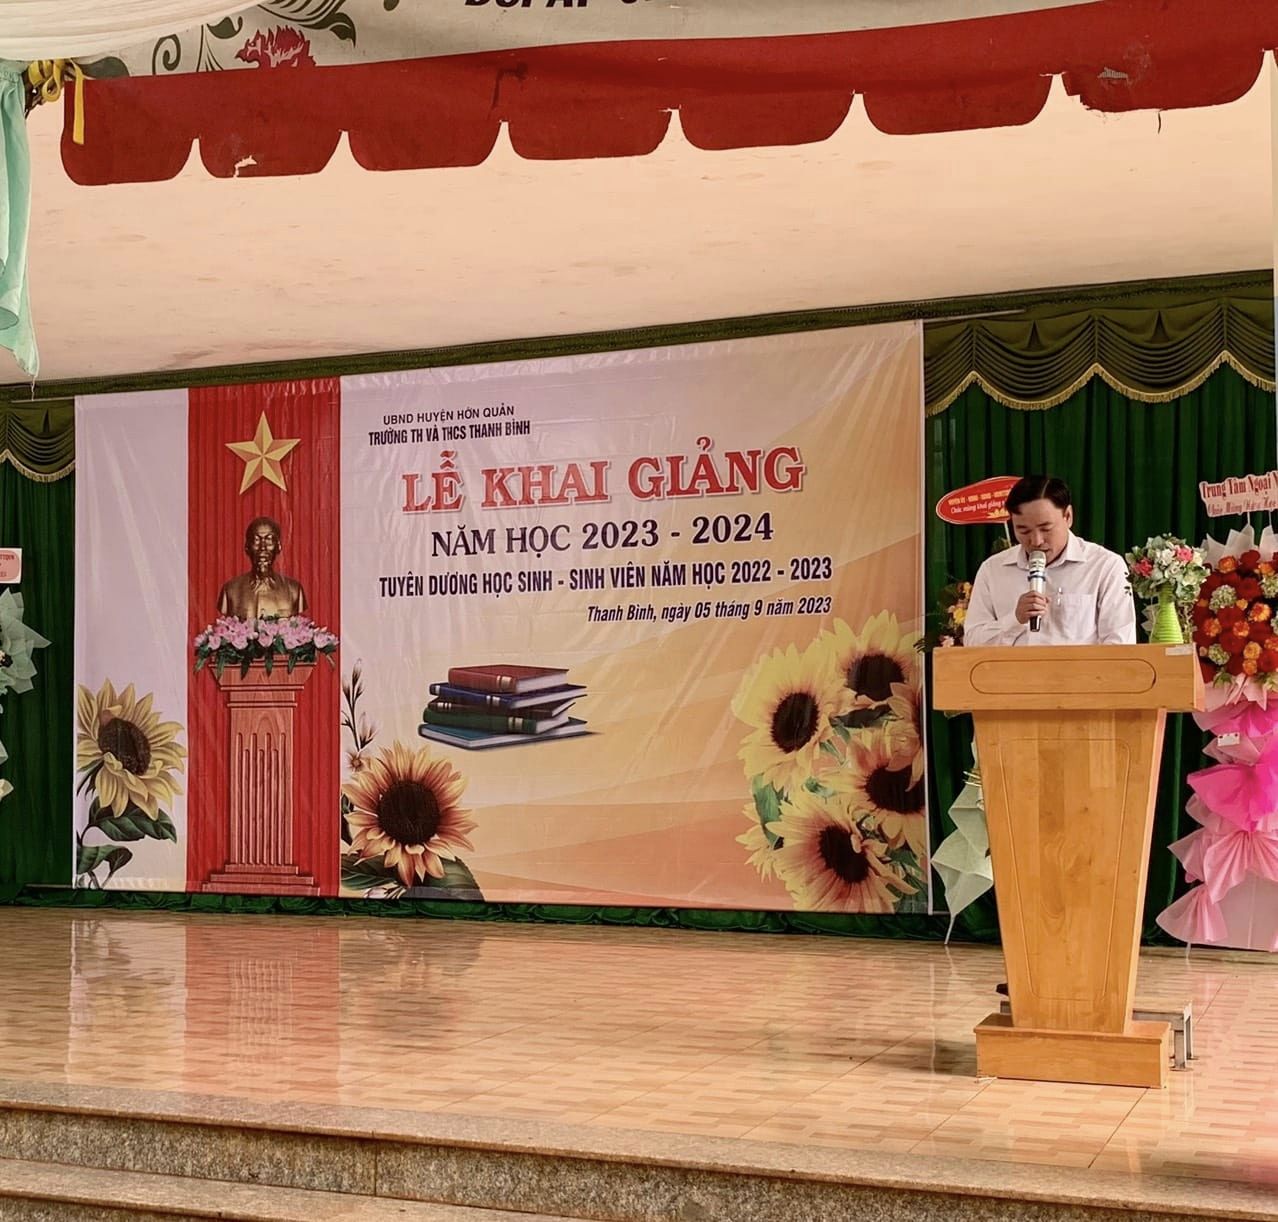 Ông Lê Đình Vân - CT.UBND xã đến dự buổi lễ khai giảng năm học tại trường tiểu học và trung học cơ sở Thanh Bình